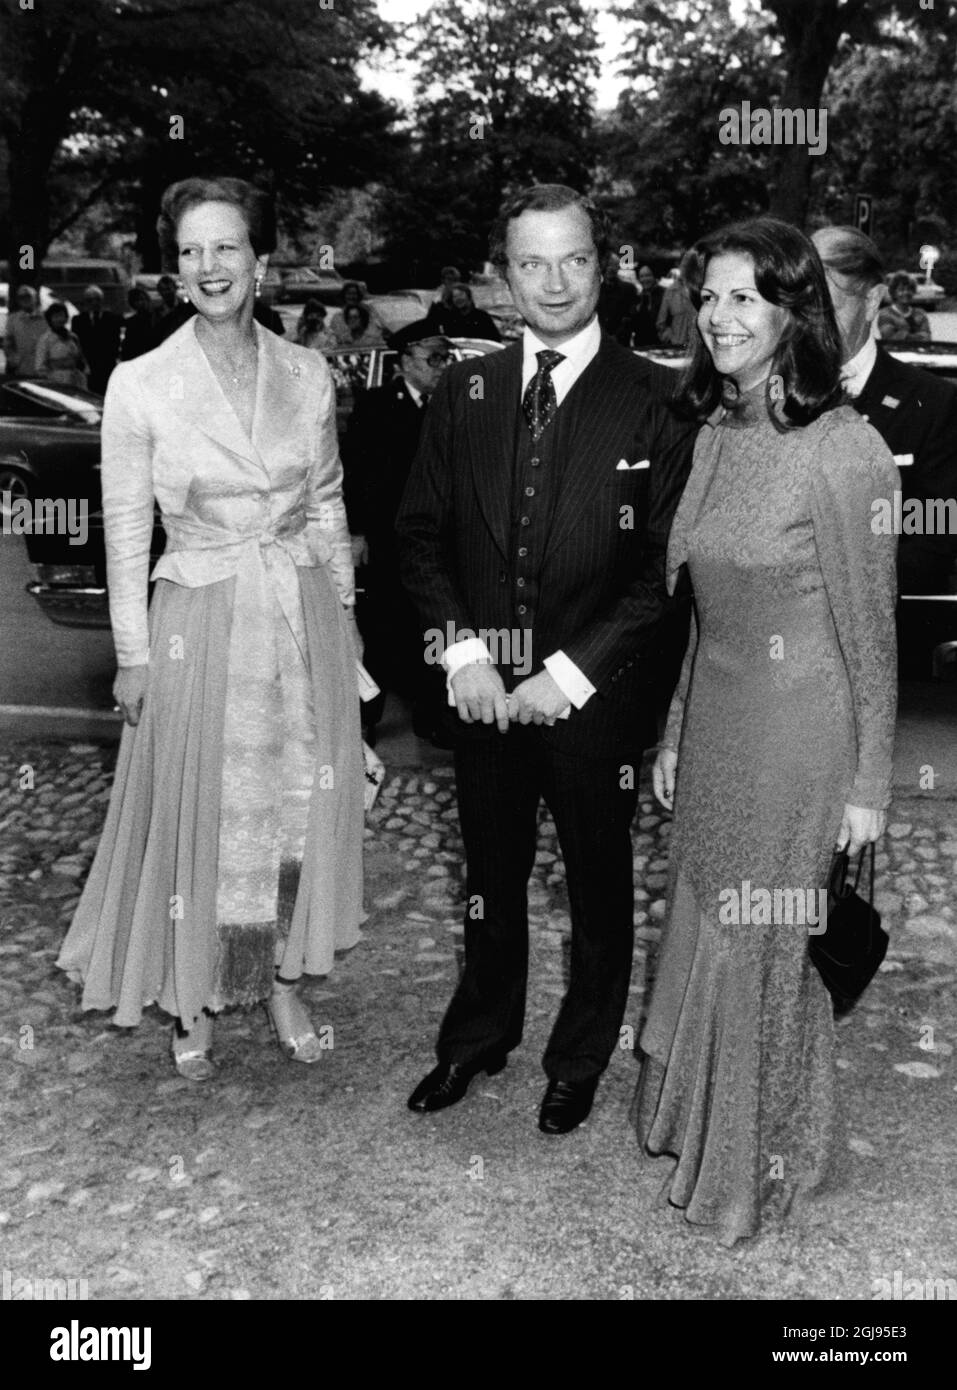 STOCCOLMA 1985-09-05 la regina Margrethe II di Danimarca è vista insieme al re Carl XVI Gustaf e alla regina Silvia di Svezia durante la visita di Stato danese in Svezia il 5 settembre 1985. Foto: Anders Holmstrom /TT Kod: 50100 Foto Stock